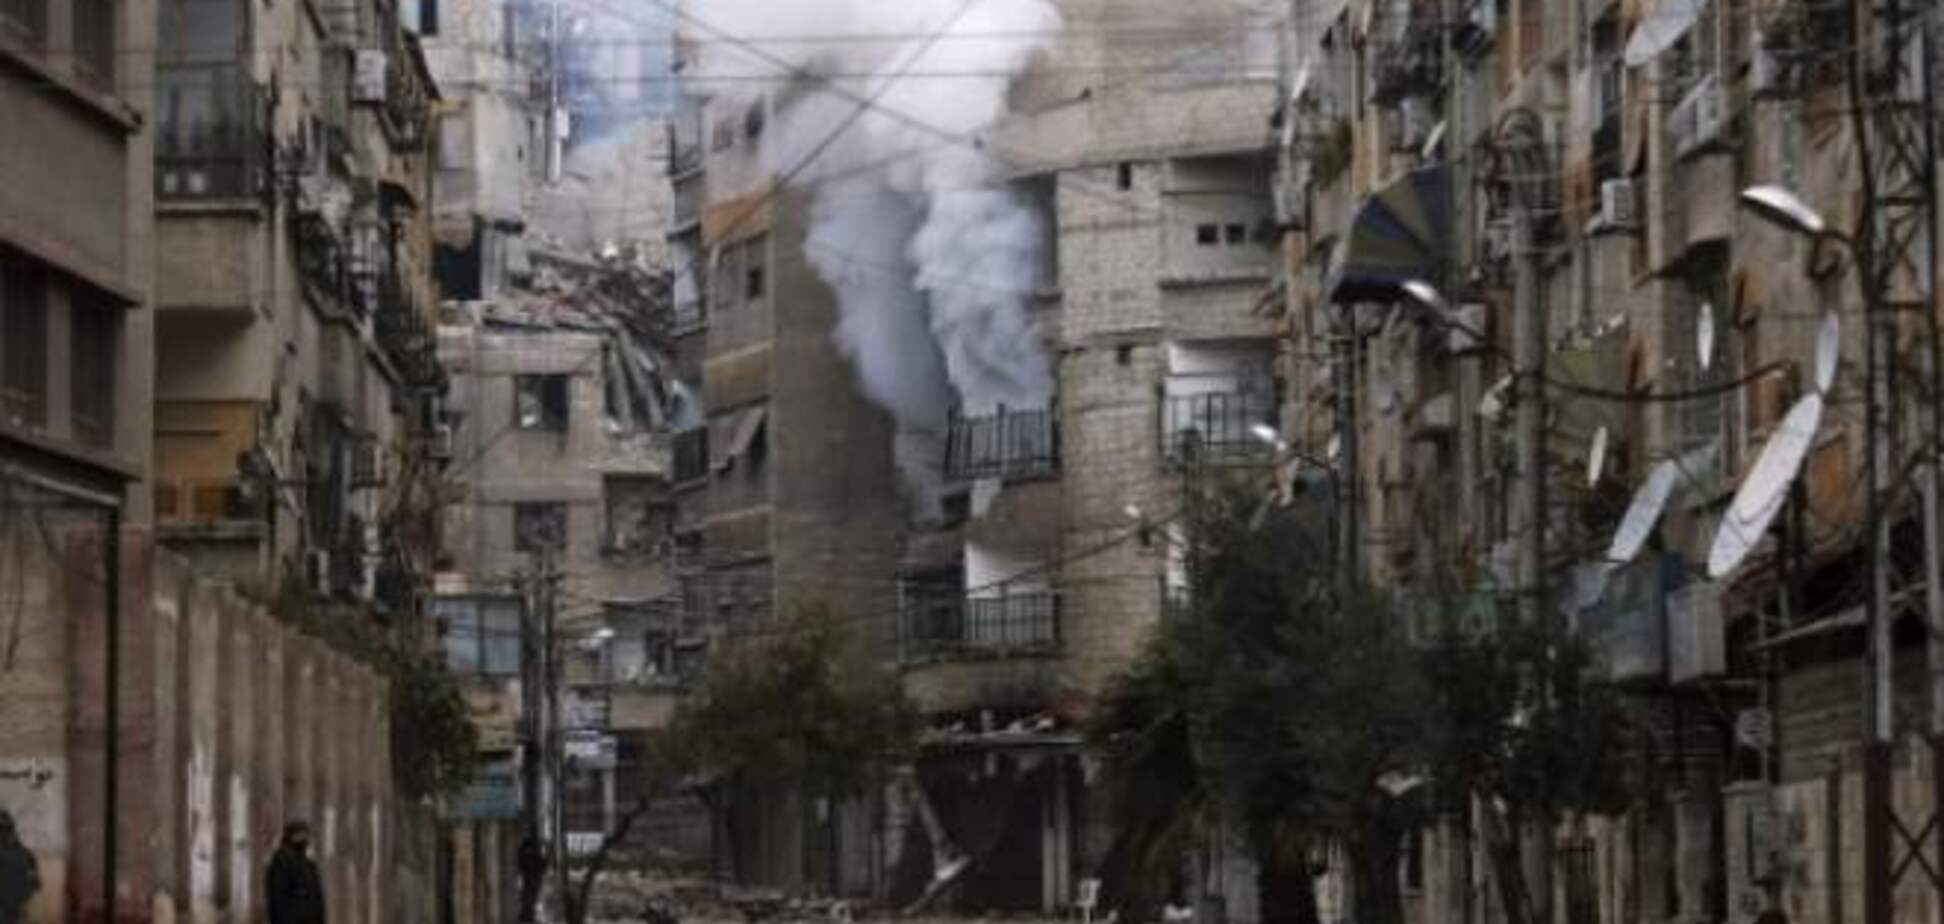 ООН требует от Сирии разрешить инспекторам расследовать химатаку 